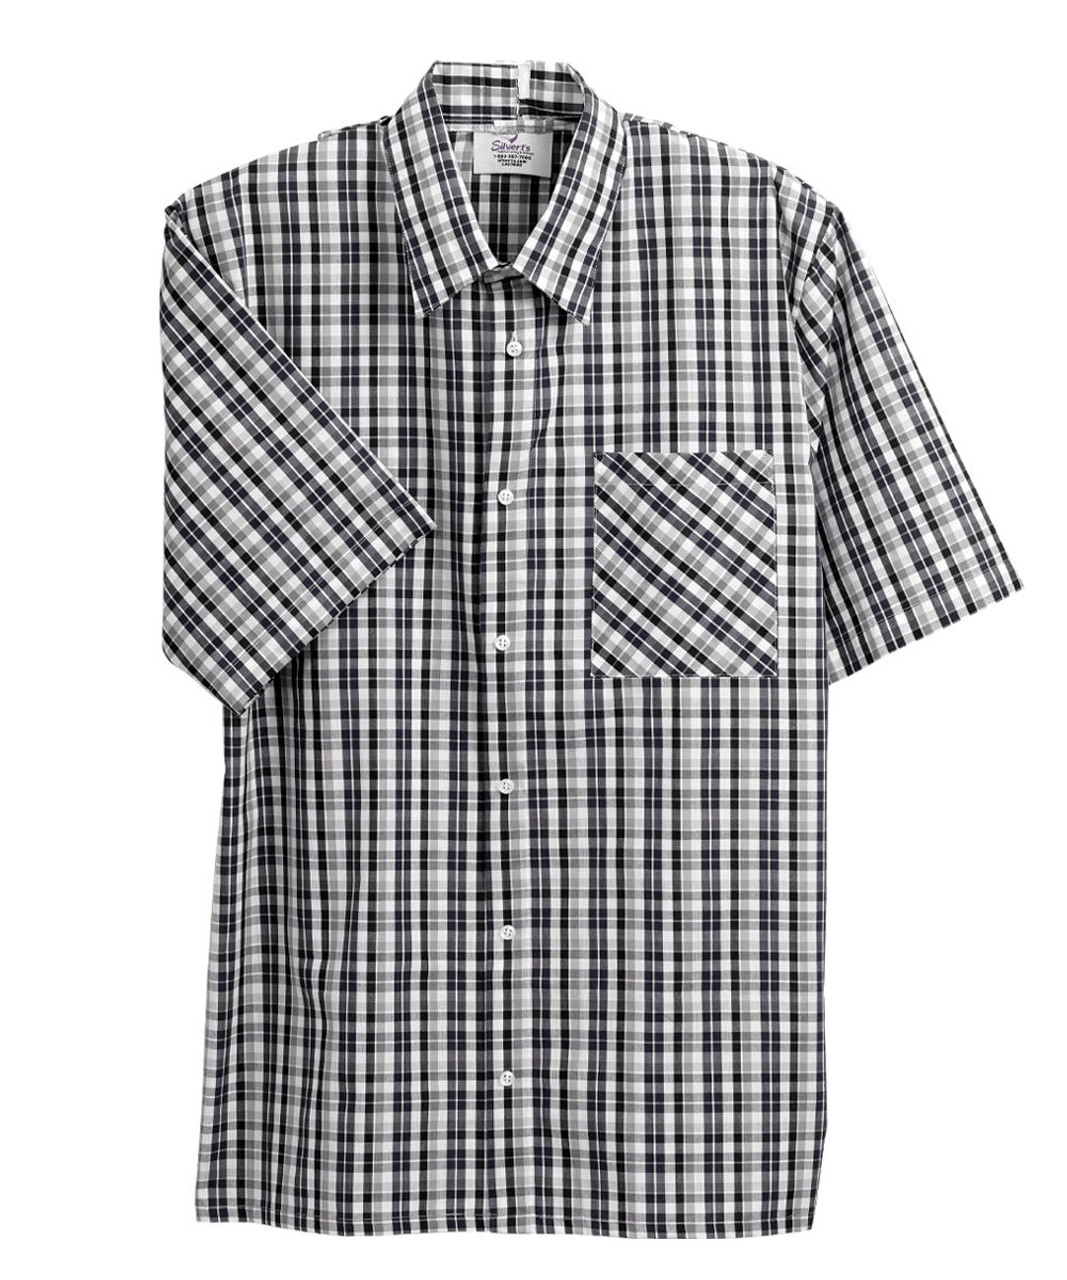 Silverts SV50700 Men's Short Sleeve Adaptive Shirts Black Check, Size=S, SV50700-SV461-S